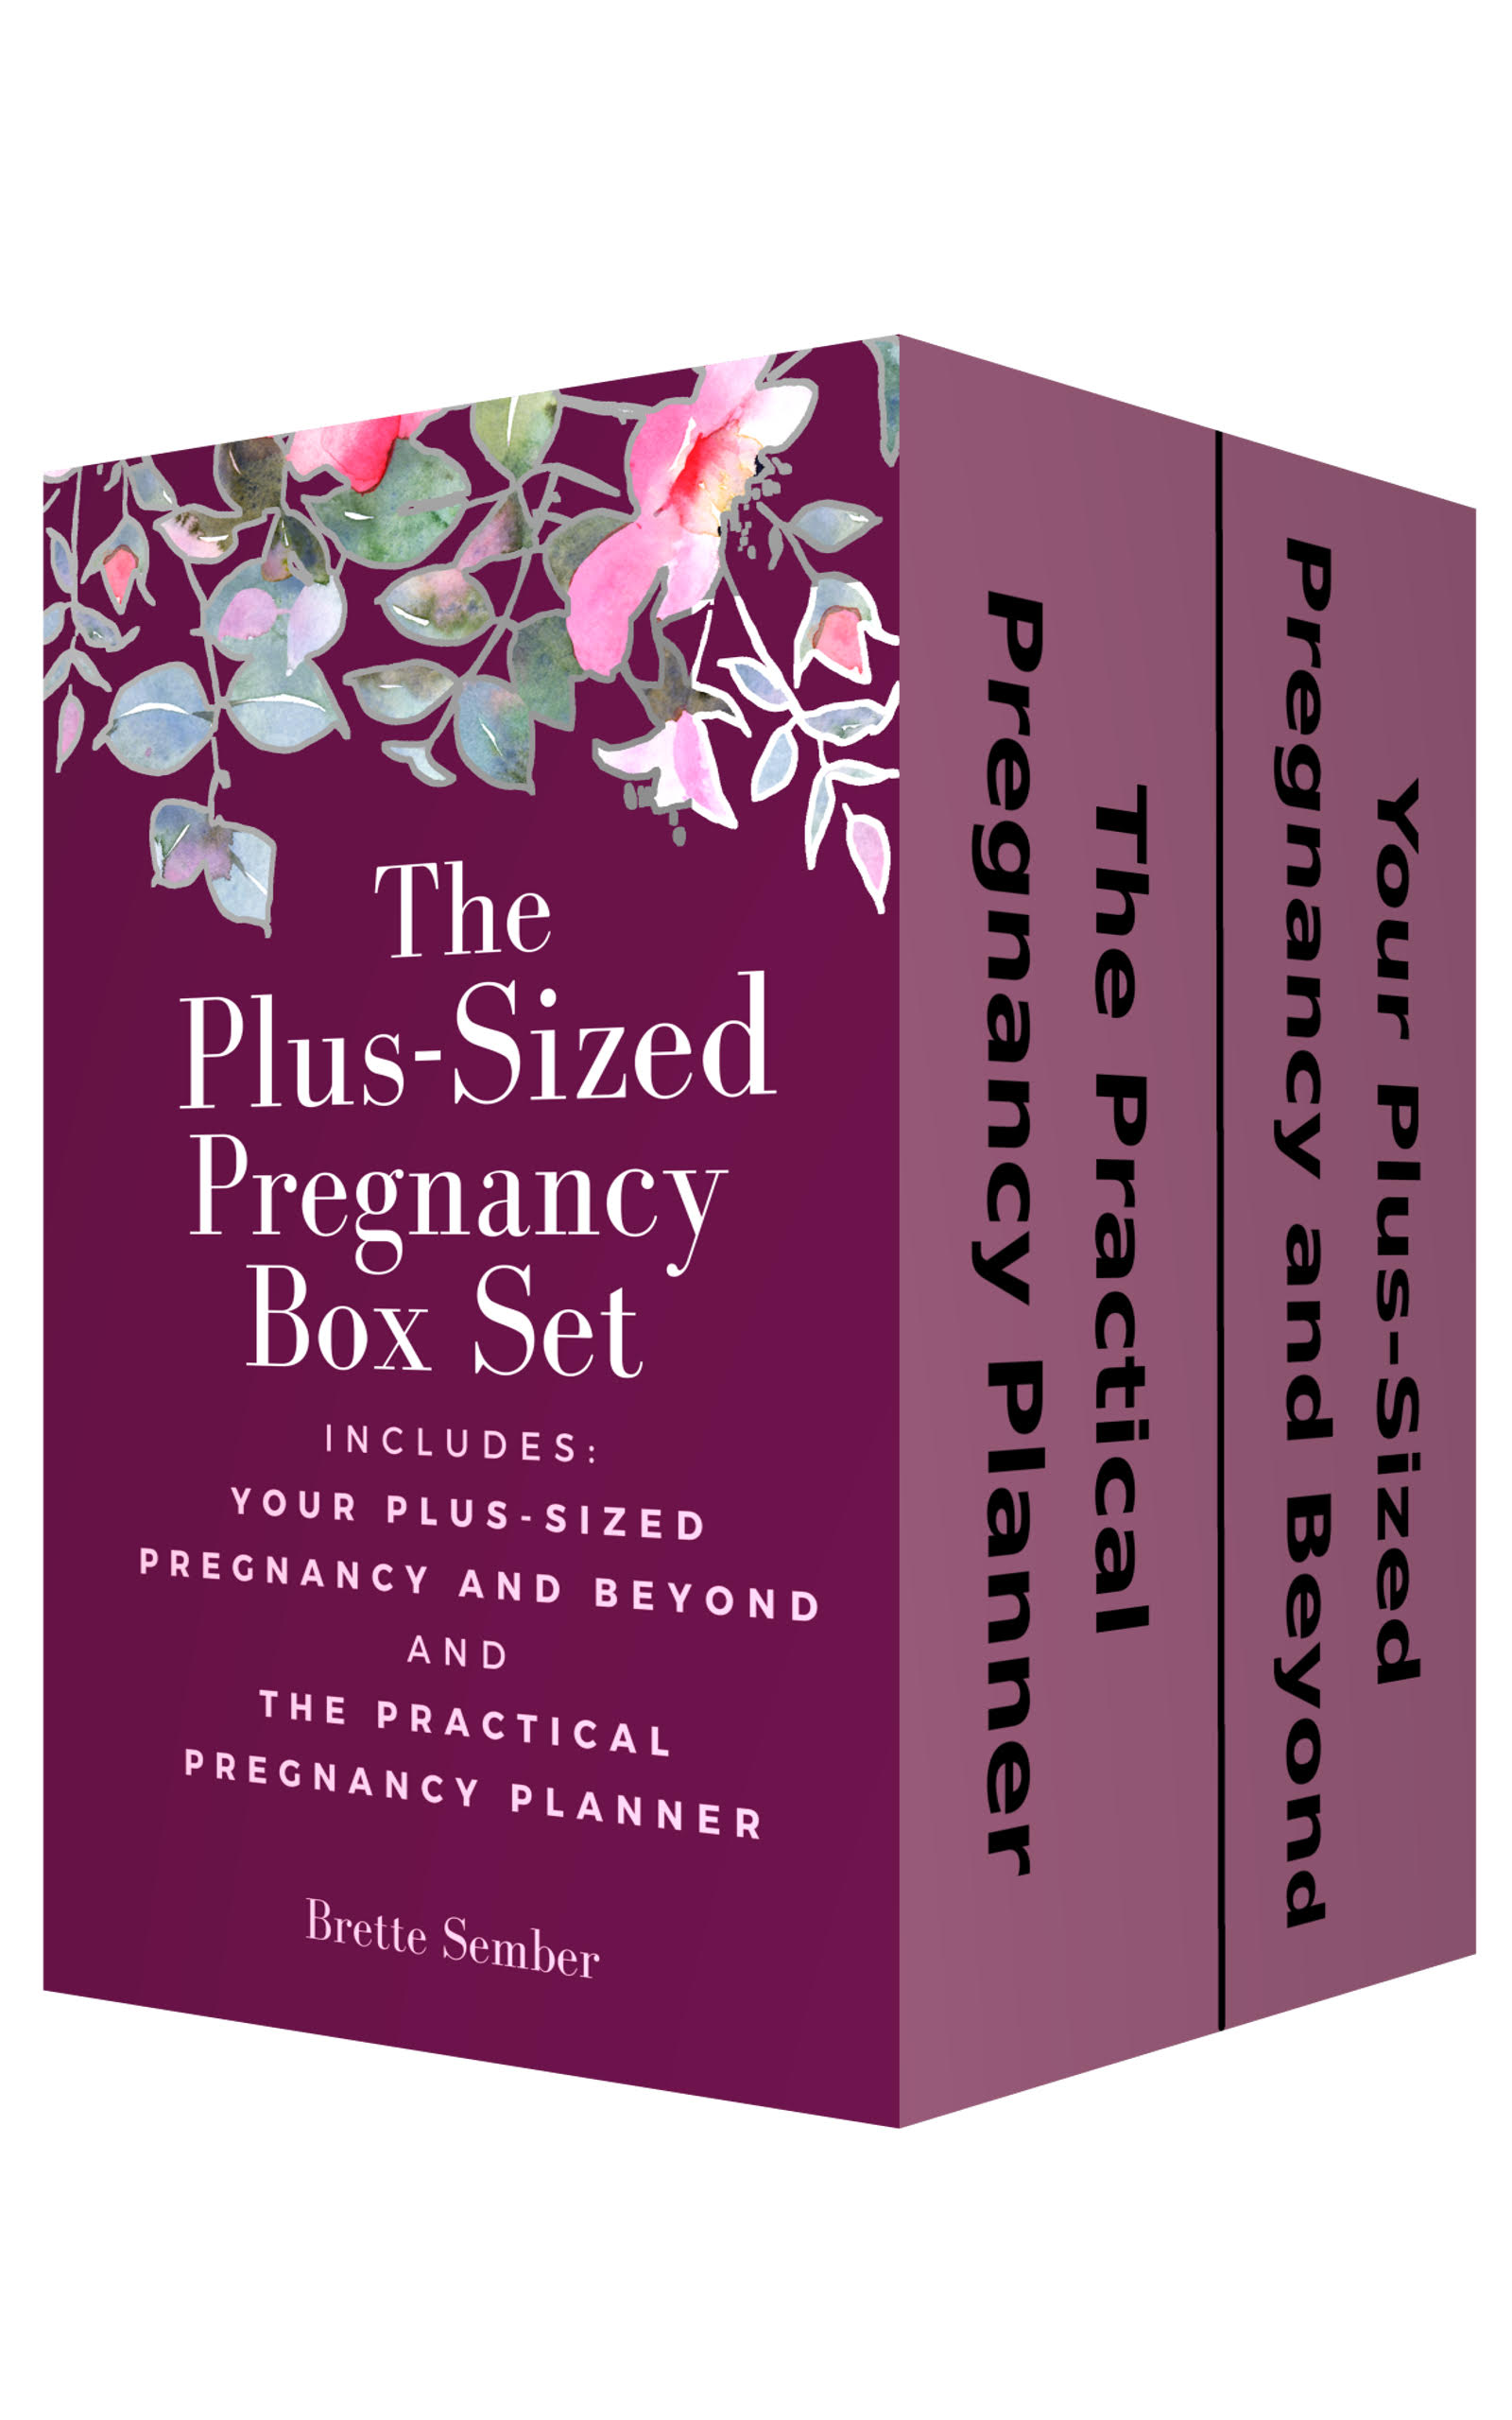 The Plus-Sized Pregnancy Box Set by Brette Sember